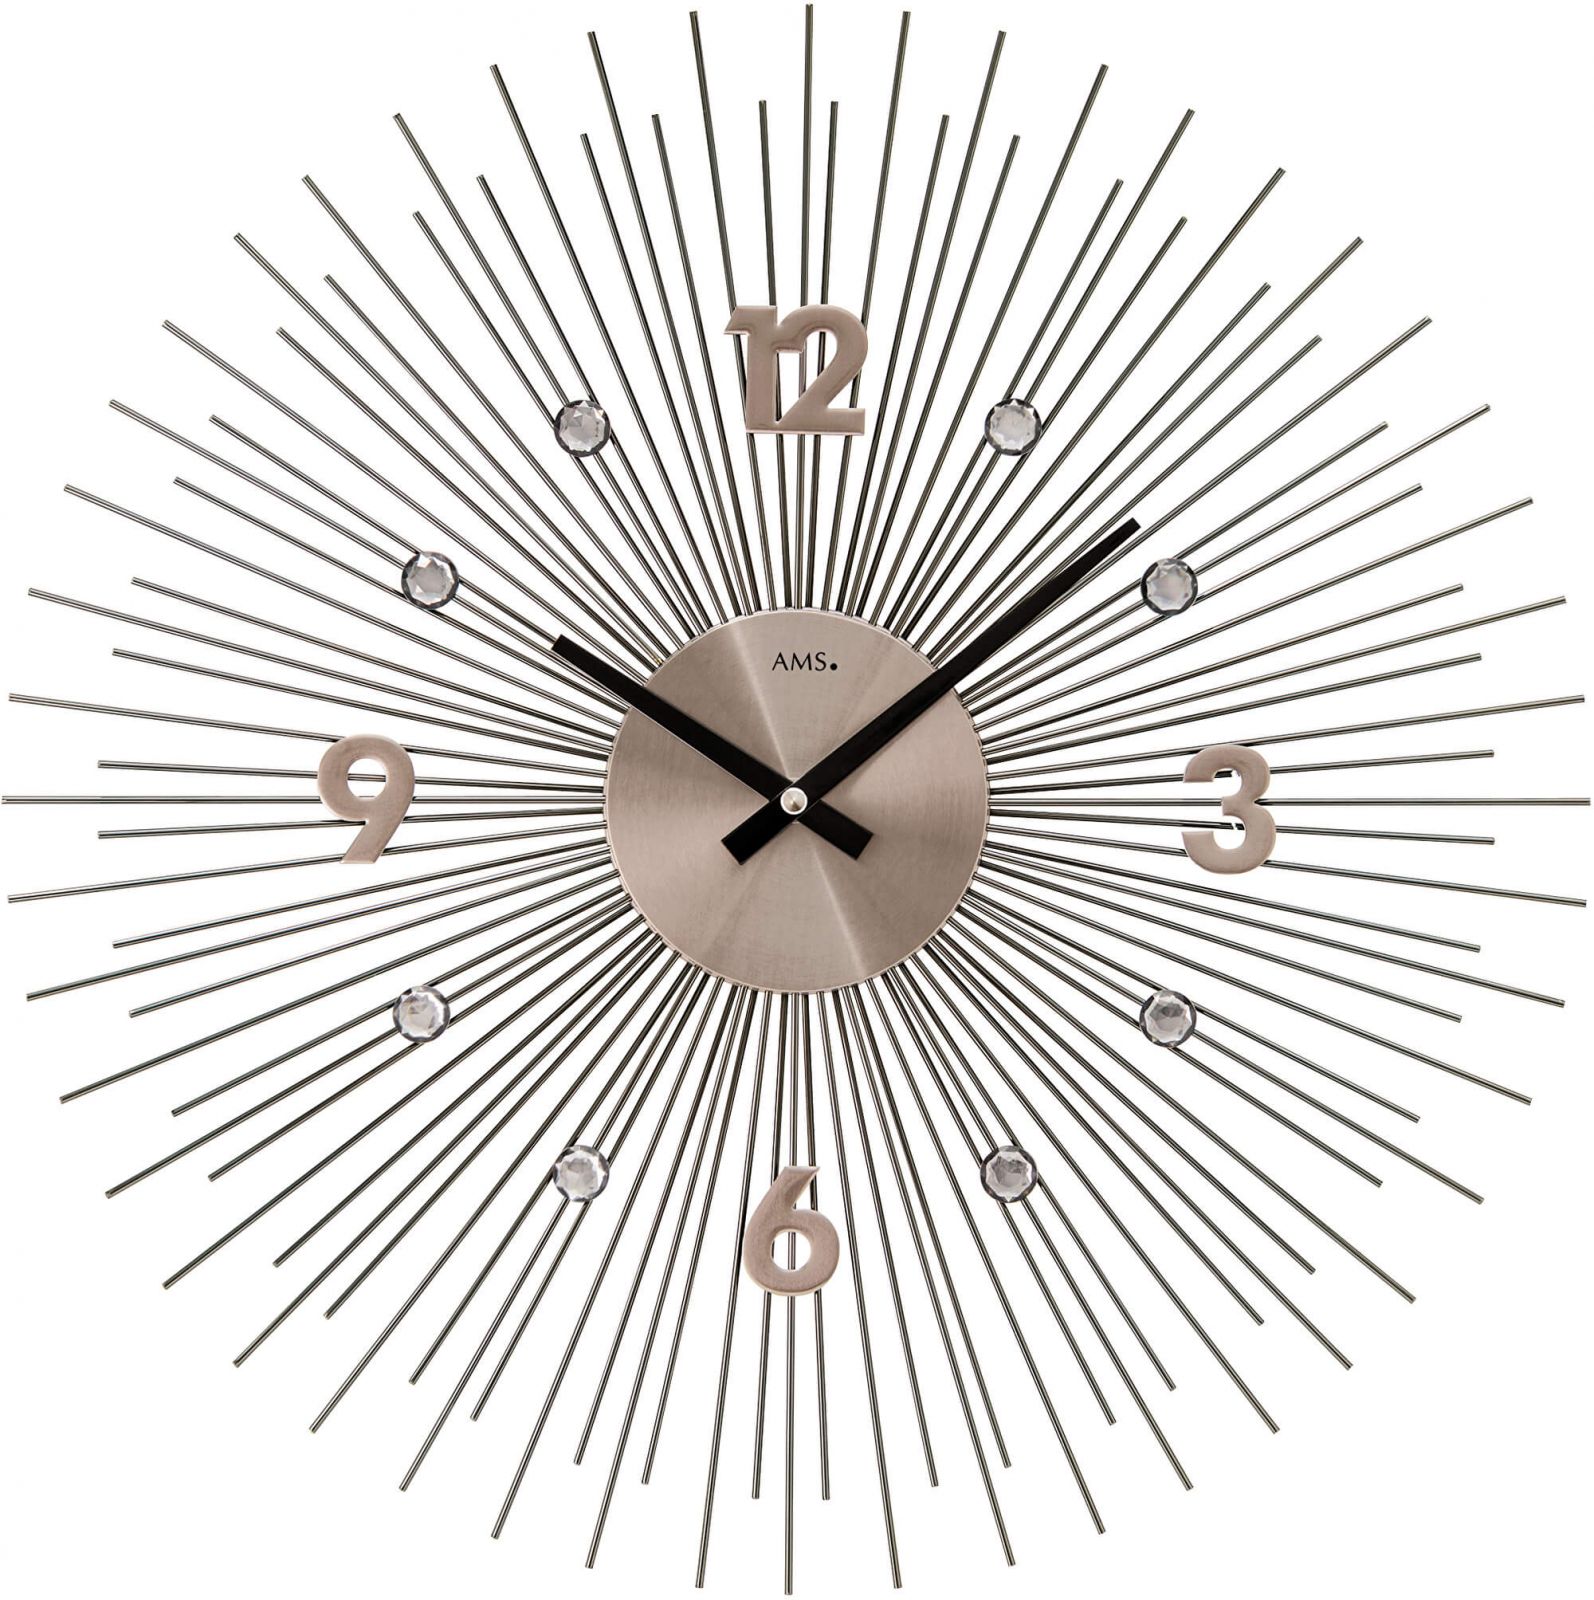 Designové hodiny velké ams 9610 motiv sluníčko antracitová